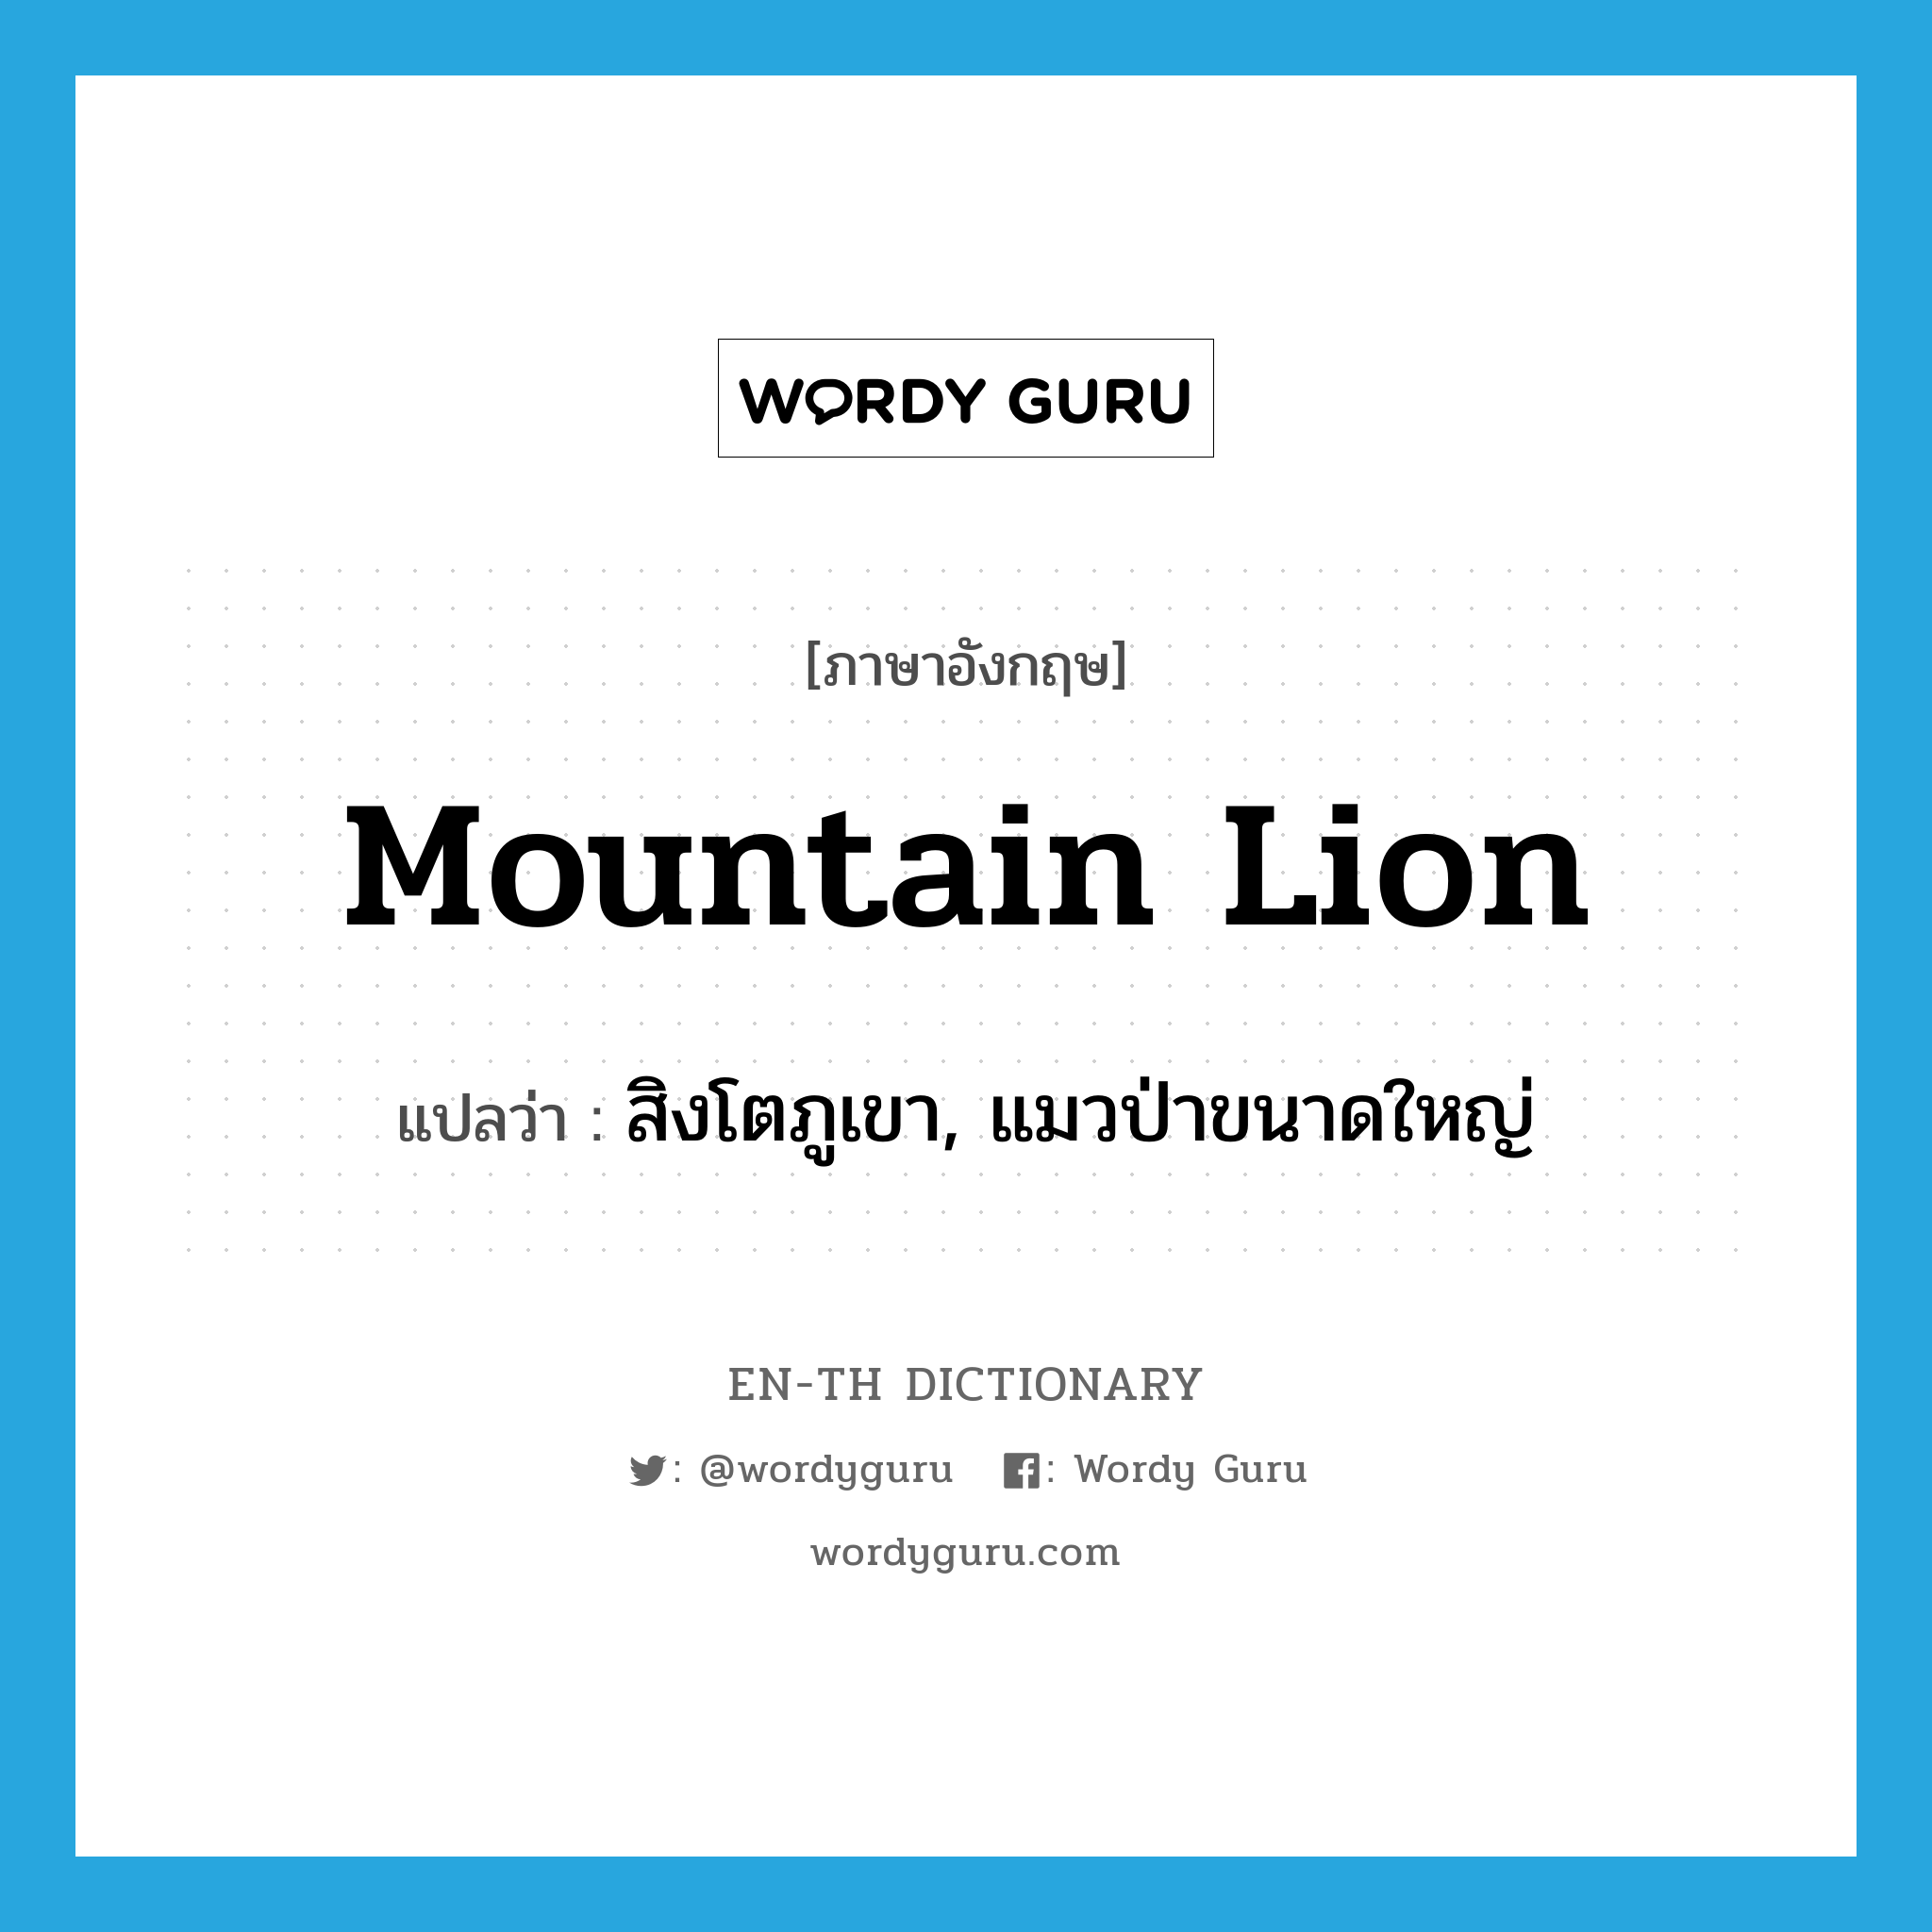 สิงโตภูเขา, แมวป่าขนาดใหญ่ ภาษาอังกฤษ?, คำศัพท์ภาษาอังกฤษ สิงโตภูเขา, แมวป่าขนาดใหญ่ แปลว่า mountain lion ประเภท N หมวด N